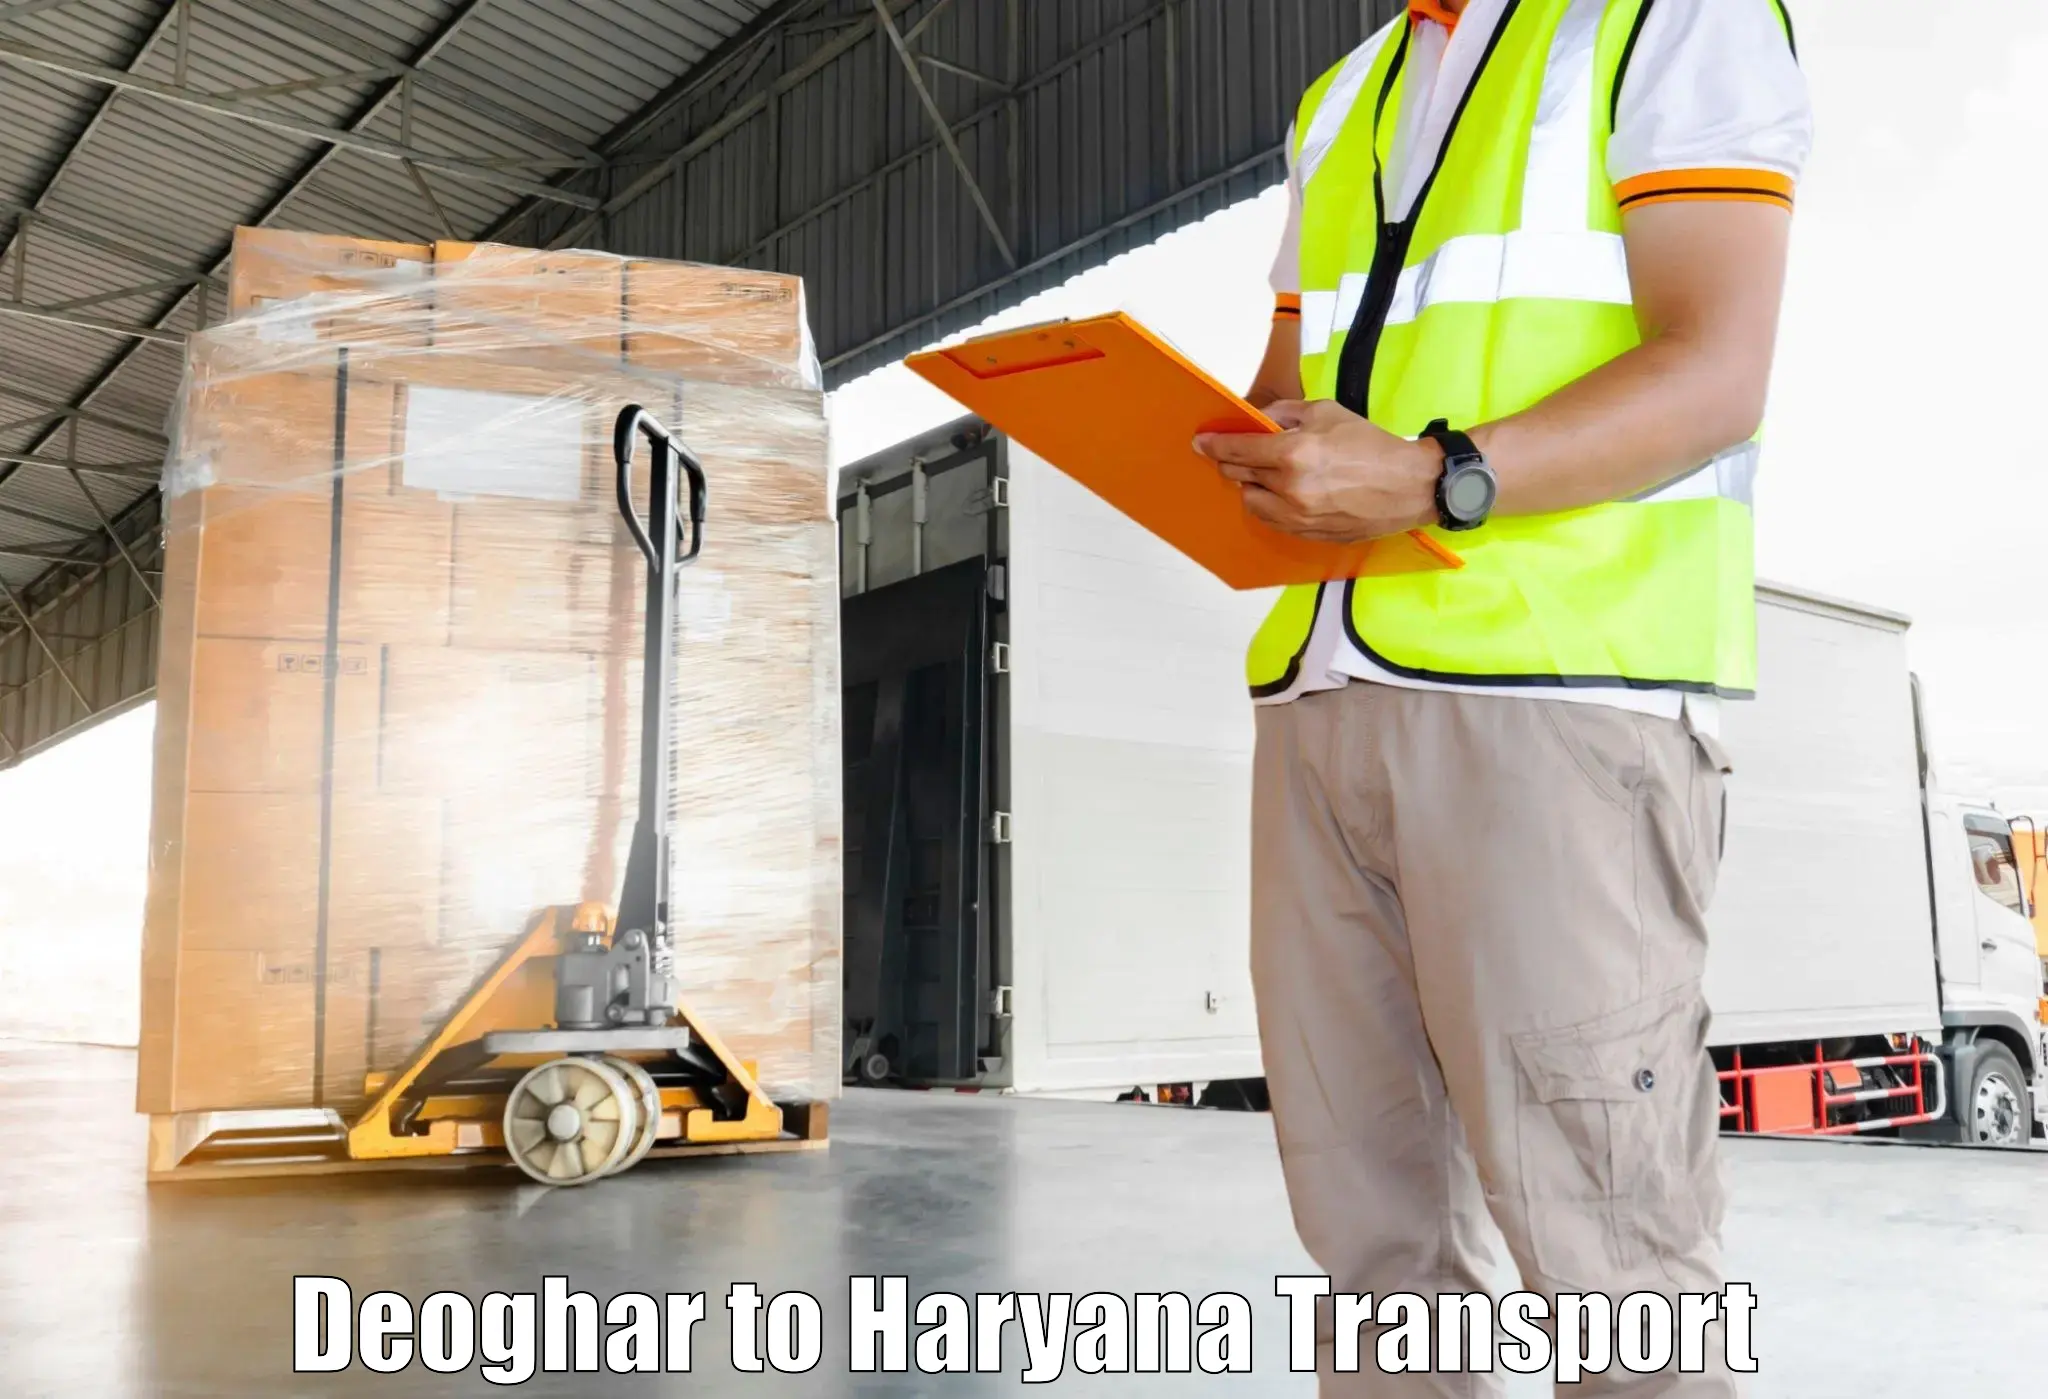 Online transport service Deoghar to Hansi